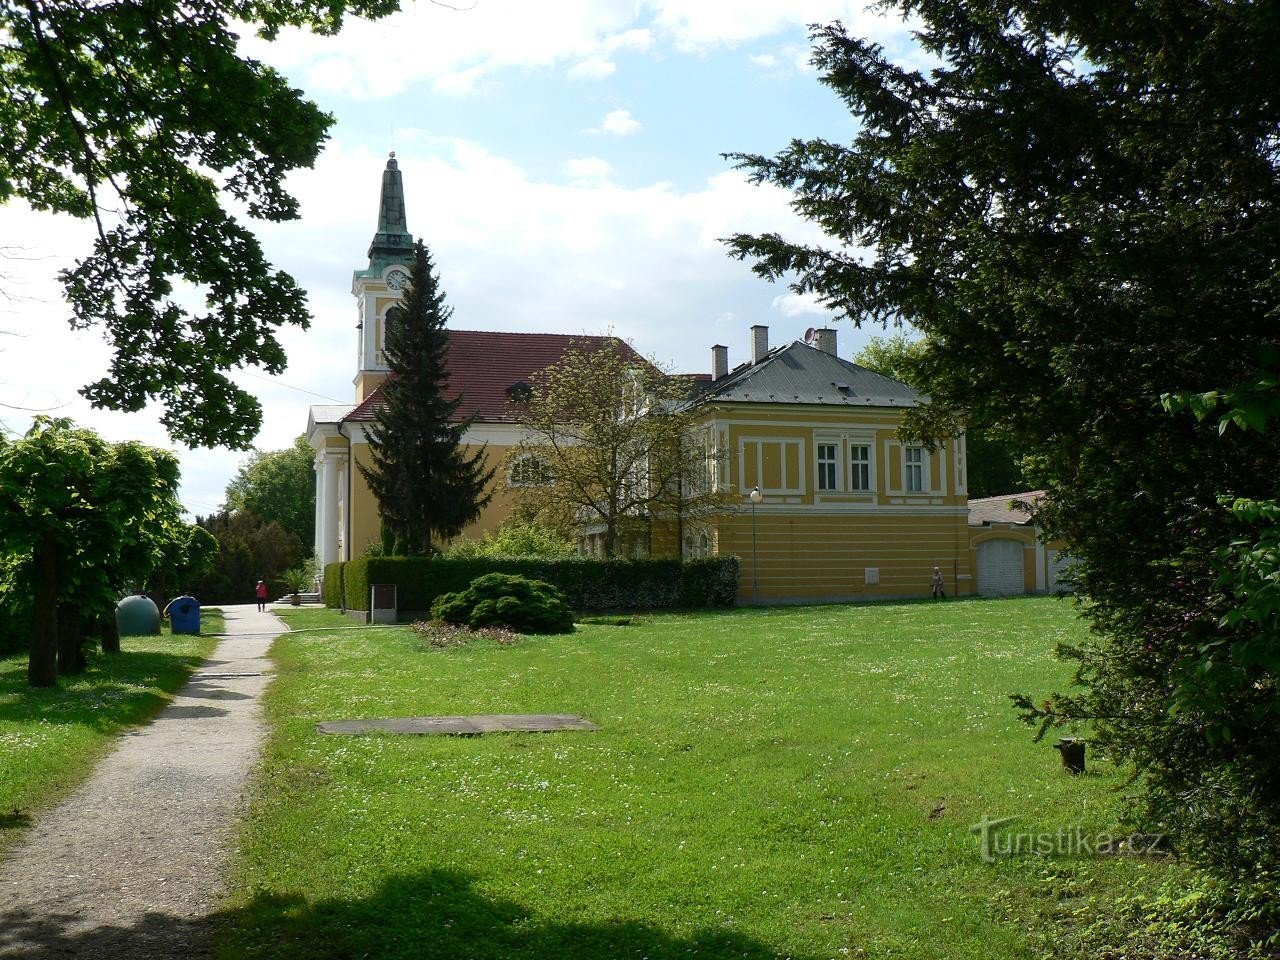 Udsigt over kirken fra Ruská gaden